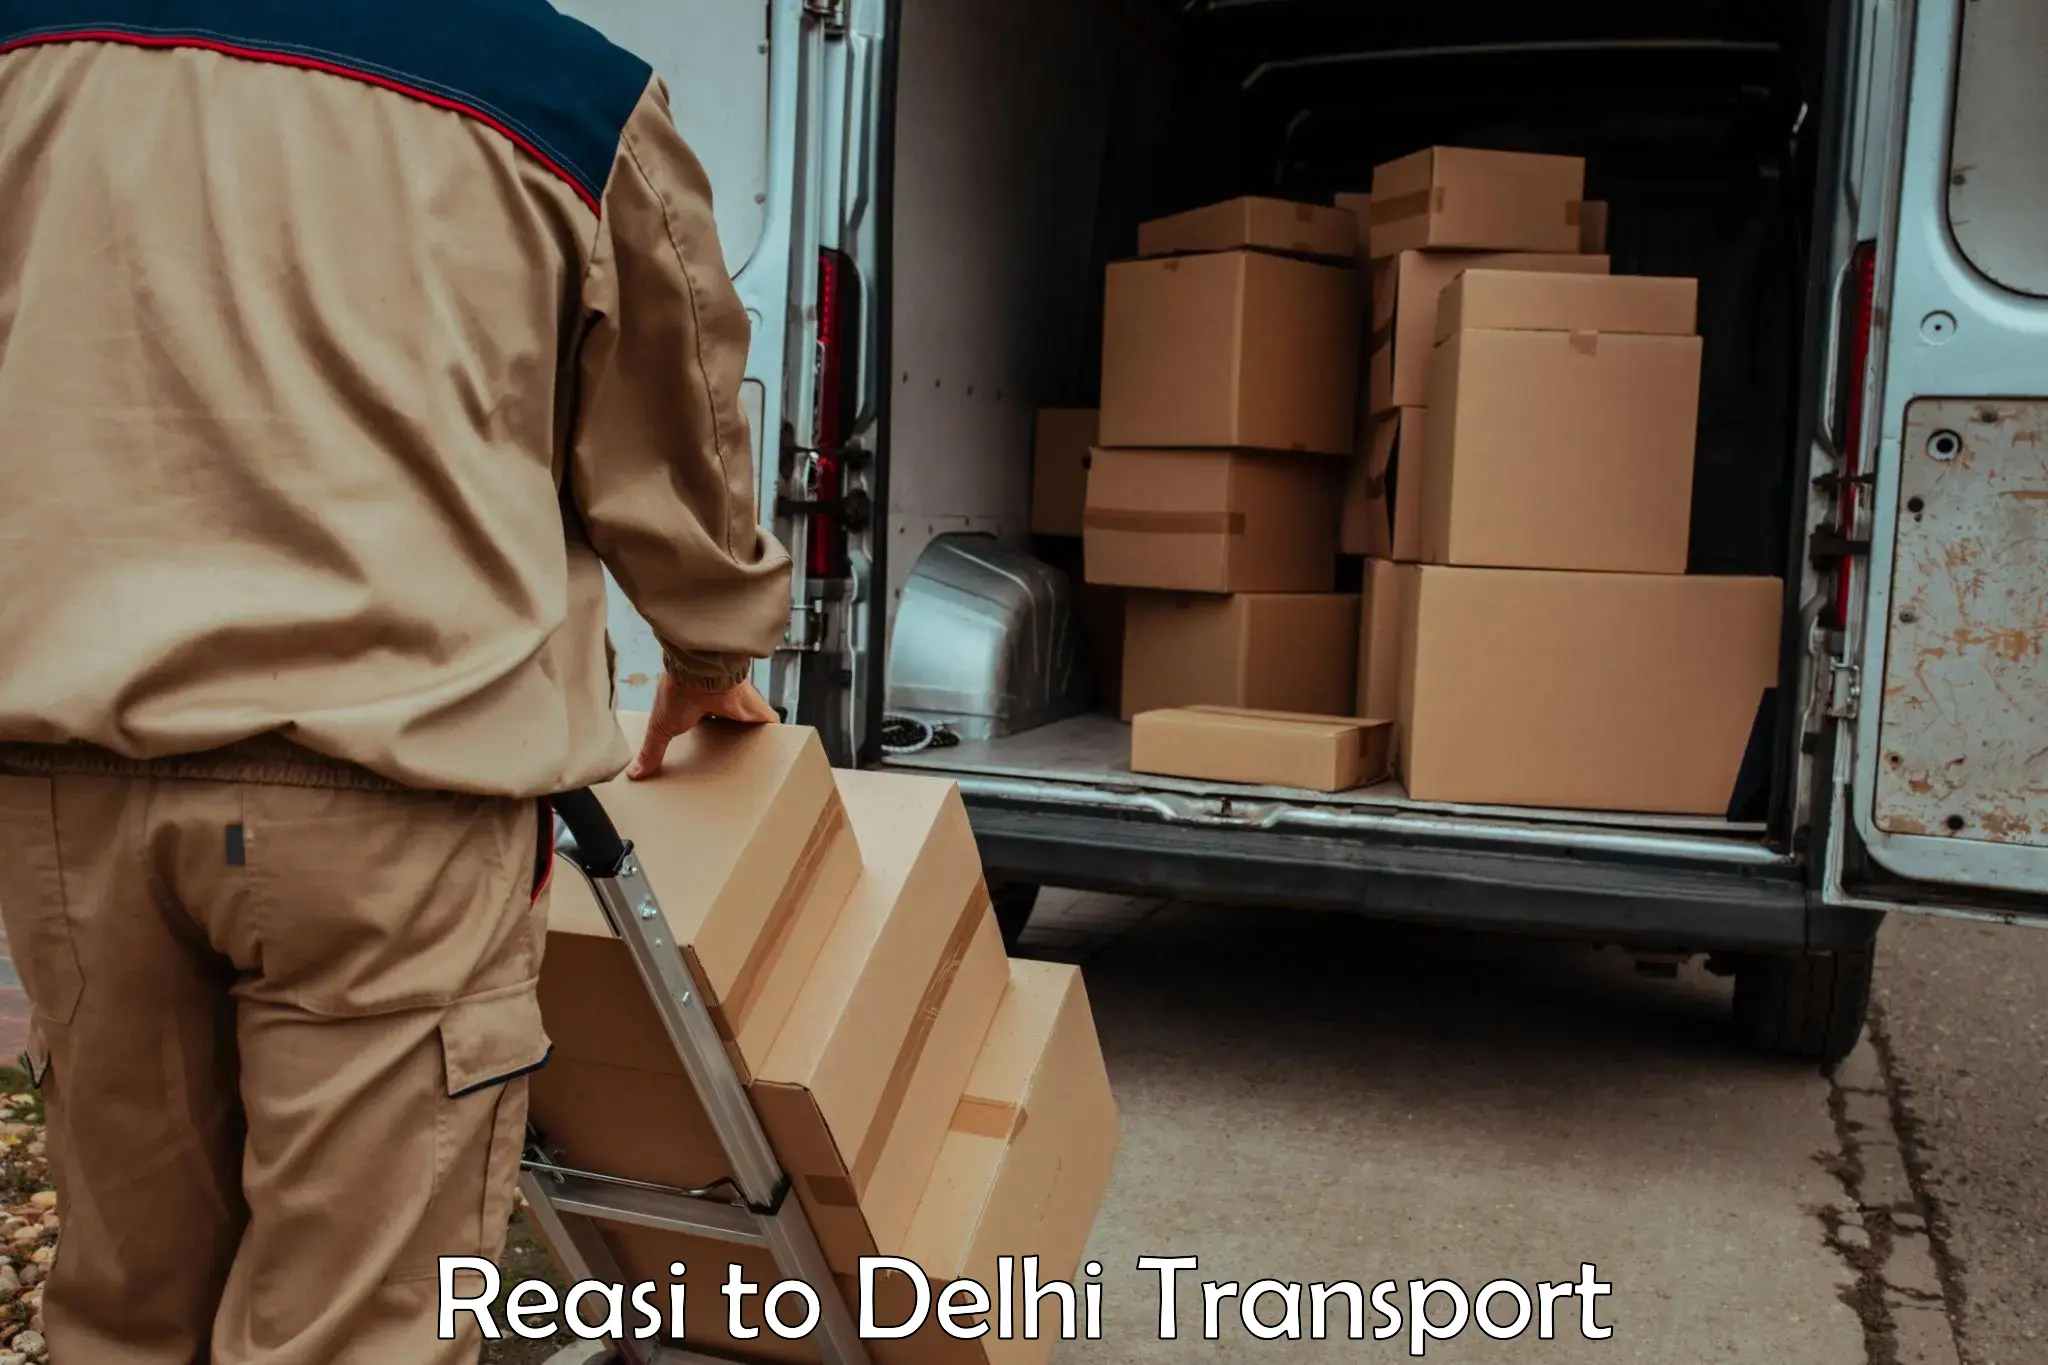 Online transport service Reasi to IIT Delhi